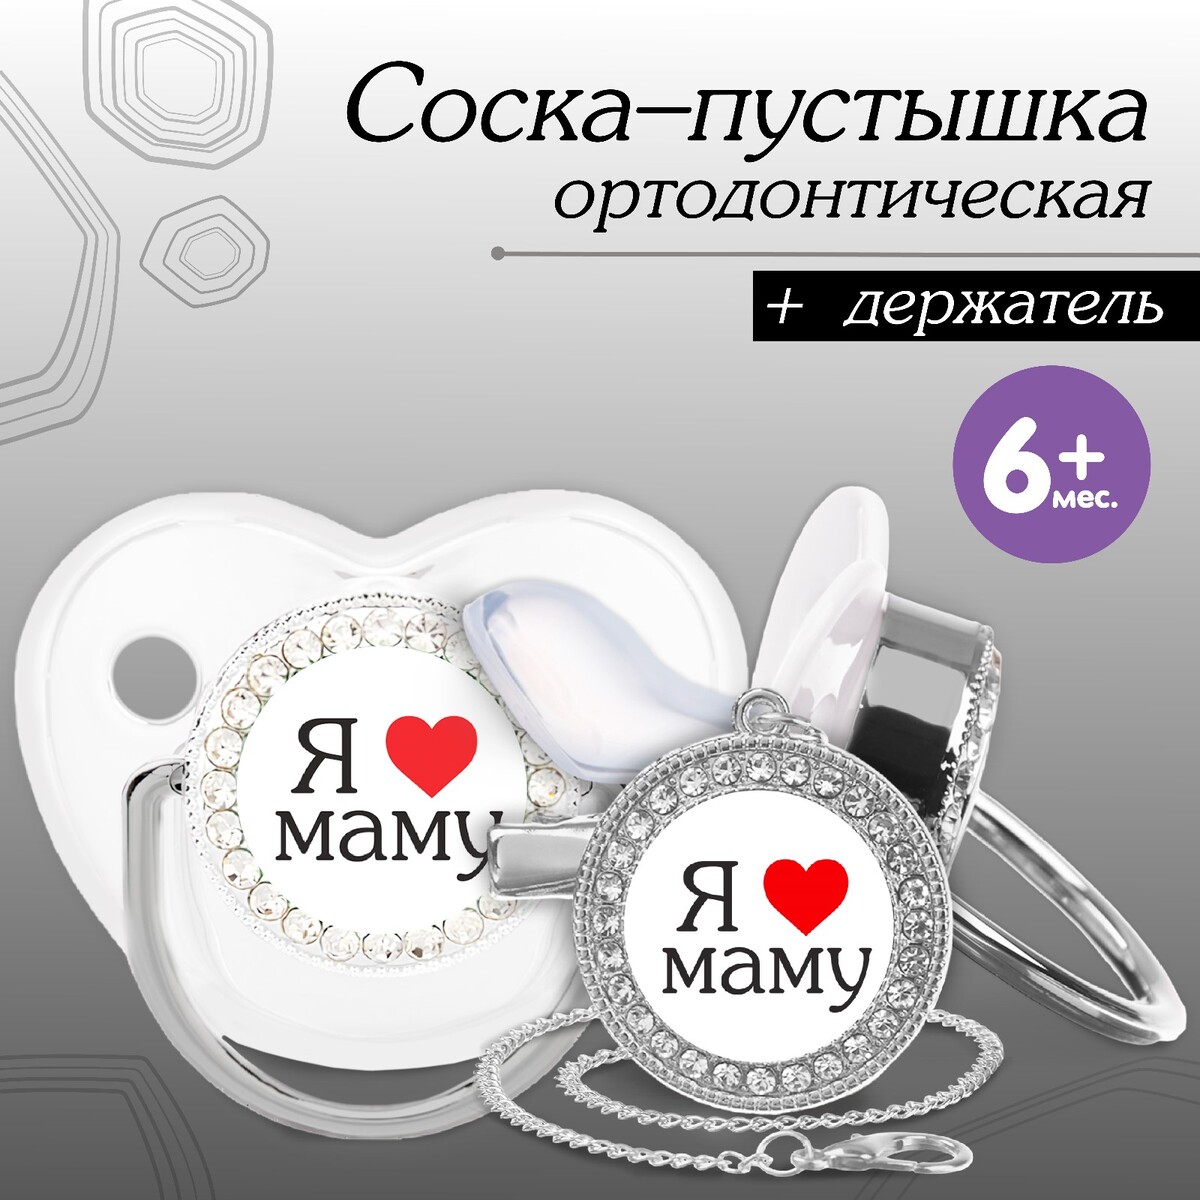 Набор: соска - пустышка ортодонтическая с держателем ложка детская серебряная мишка с сердечками с позолотой 338лж03802